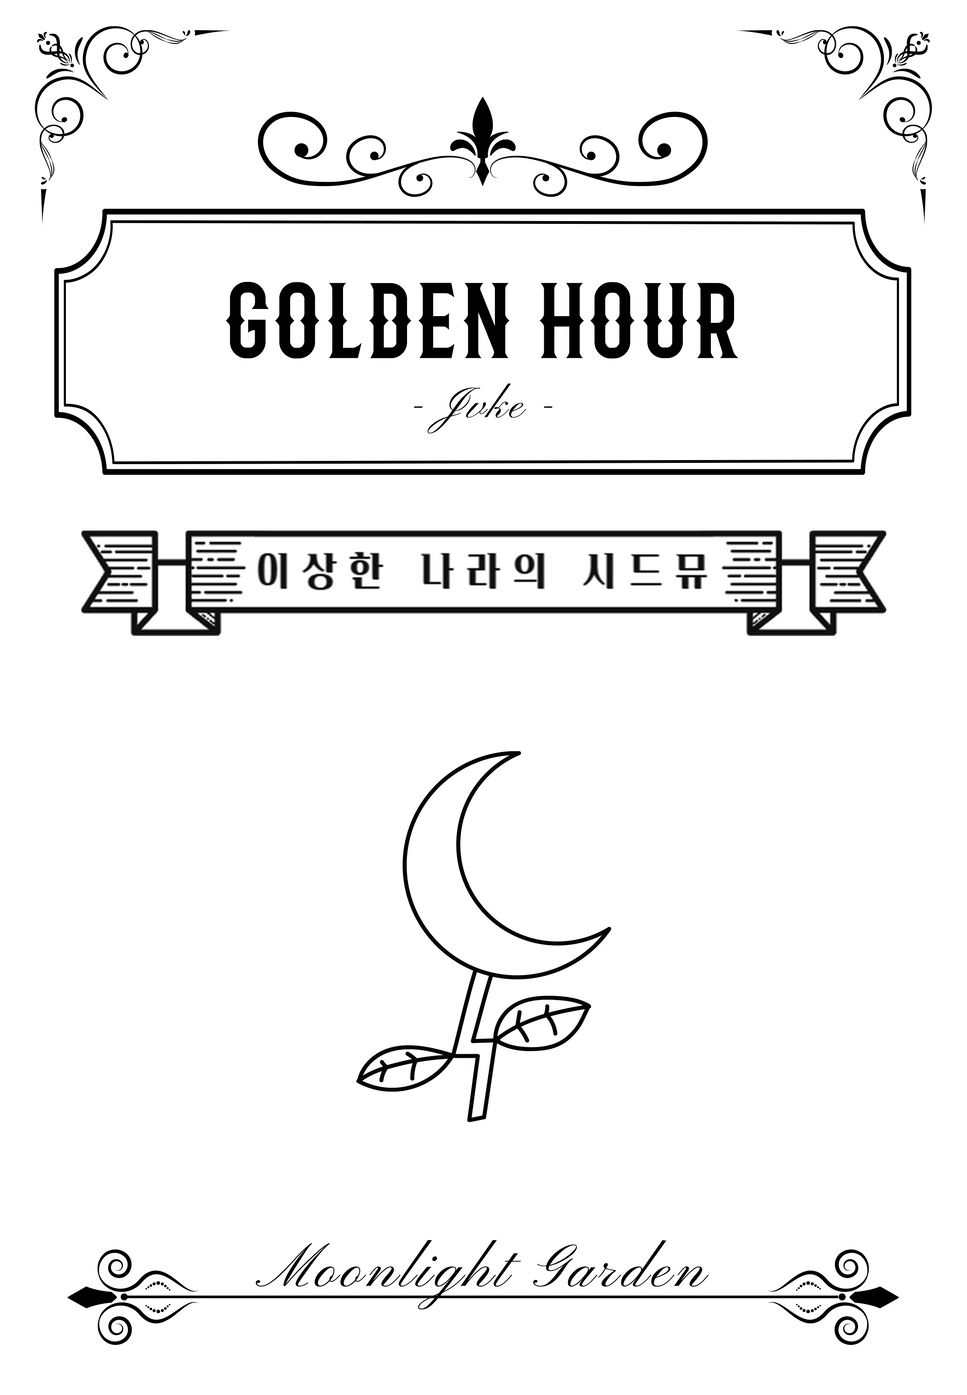 JVKE - Golden Hour by Moonlight garden